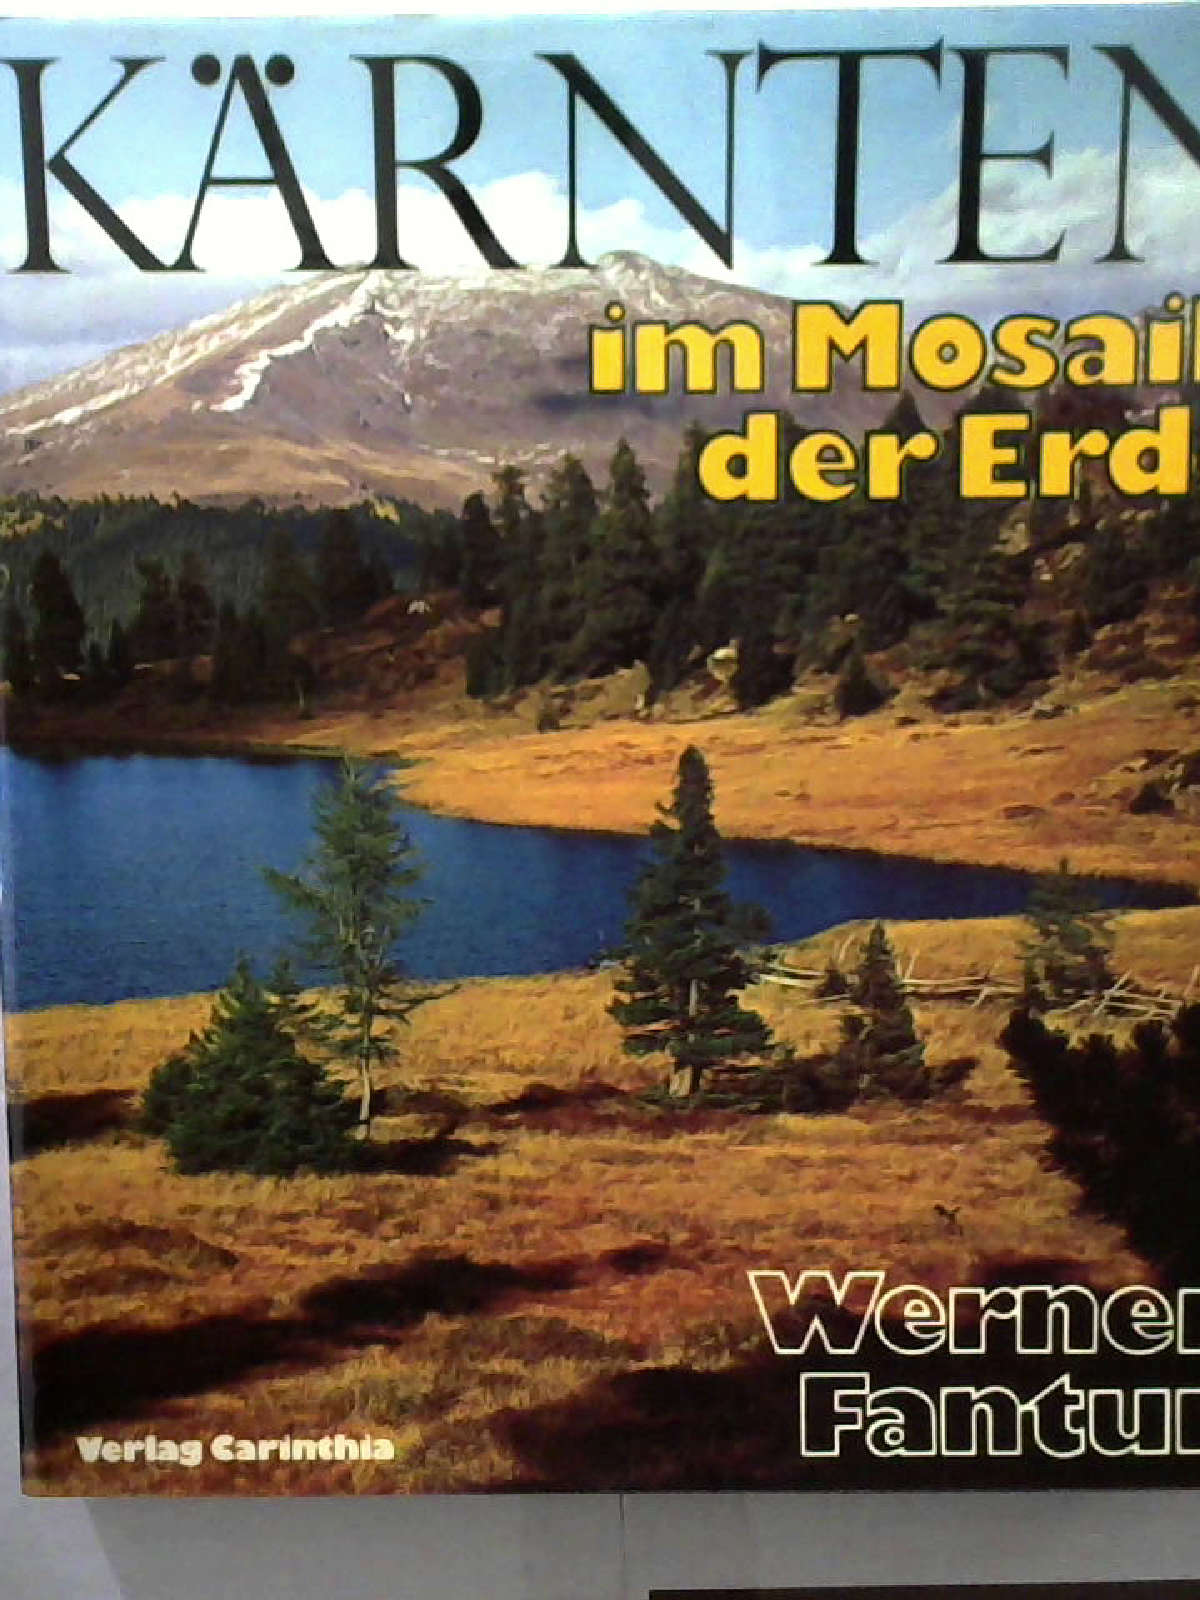 Kärnten im Mosaik der Erde [Gebundene Ausgabe] Fantur, Werner - Werner Fantur